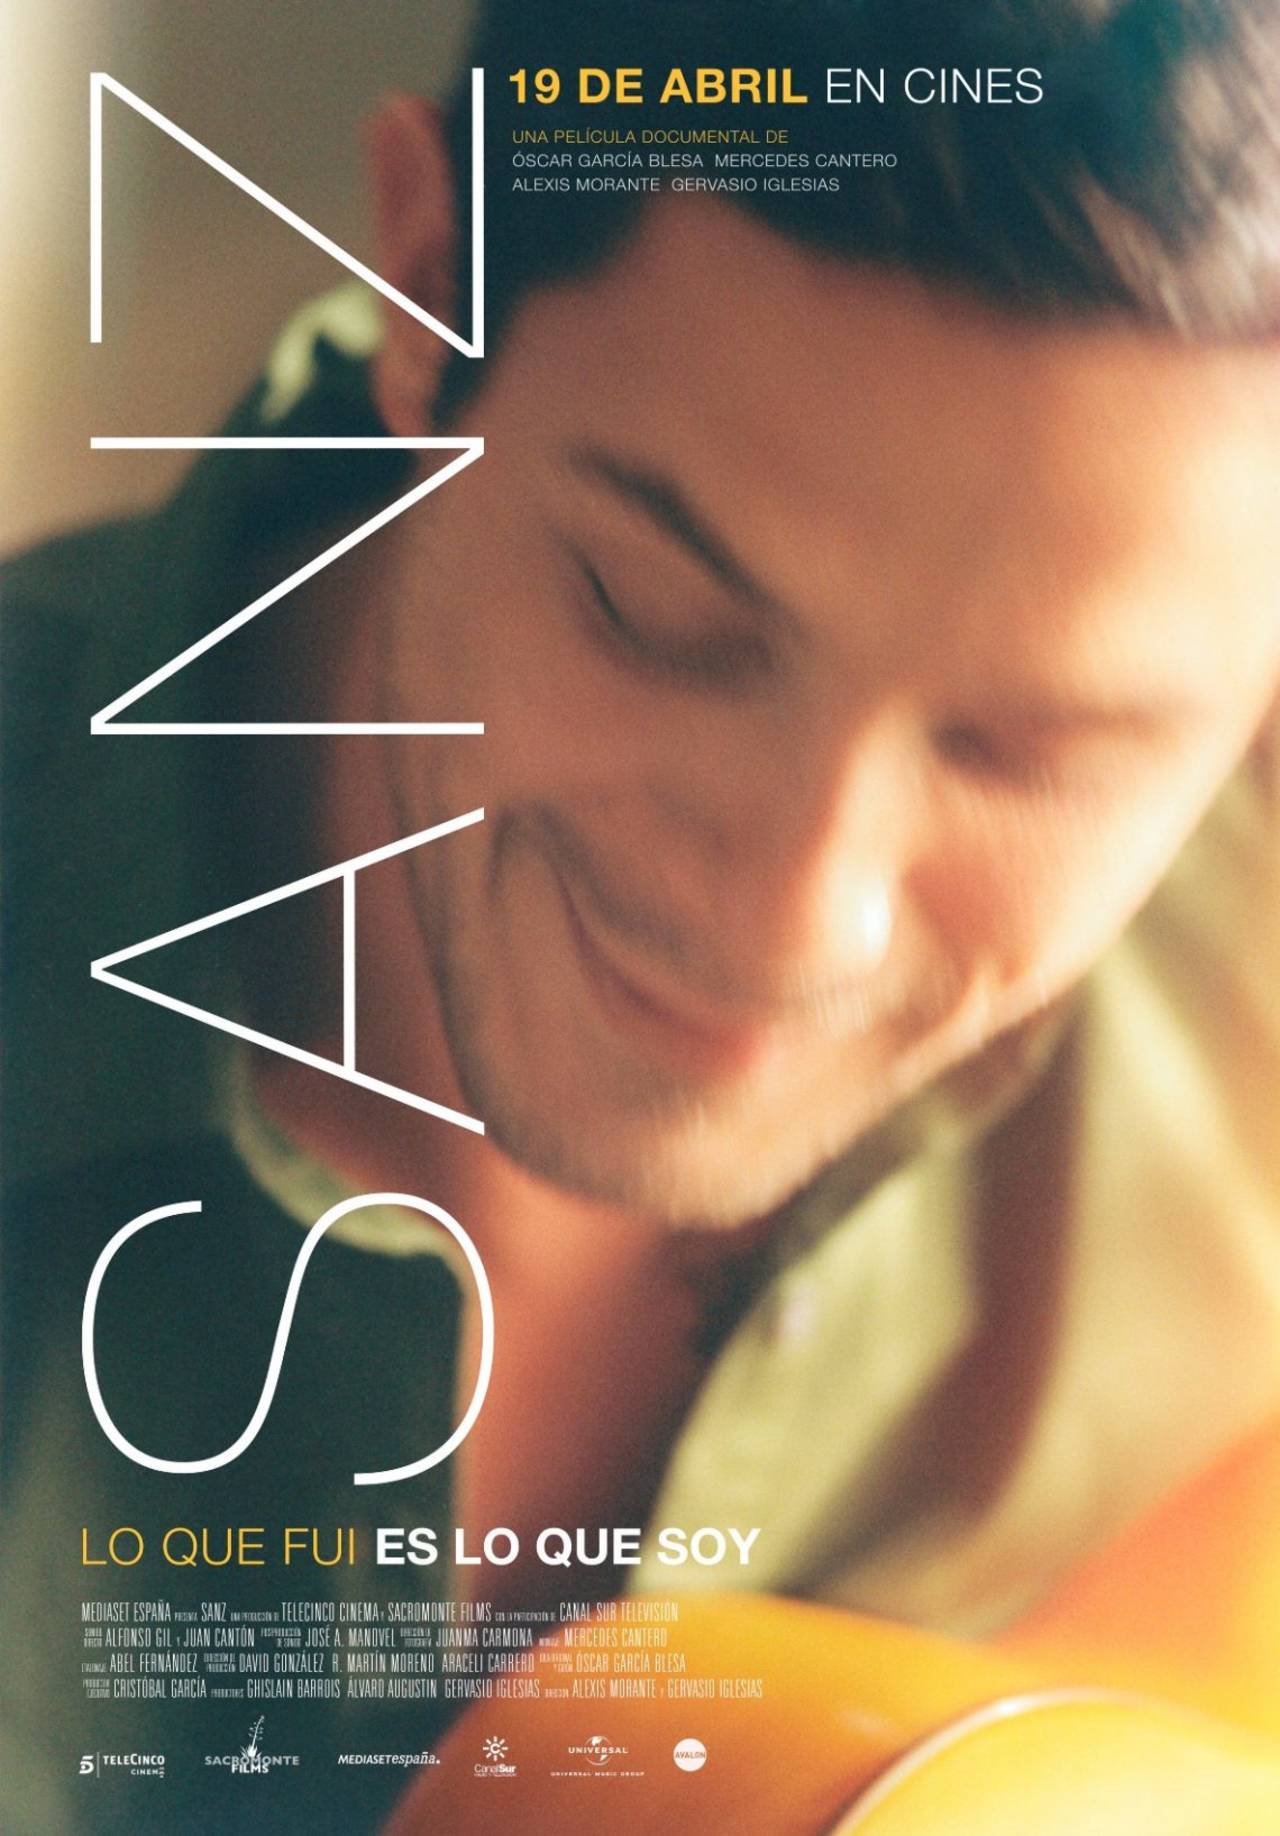 Estreno. El cantante Alejandro Sanz revela su vida personal y profesional en el documental Sanz: Lo que fui es lo que soy. (ARCHIVO)